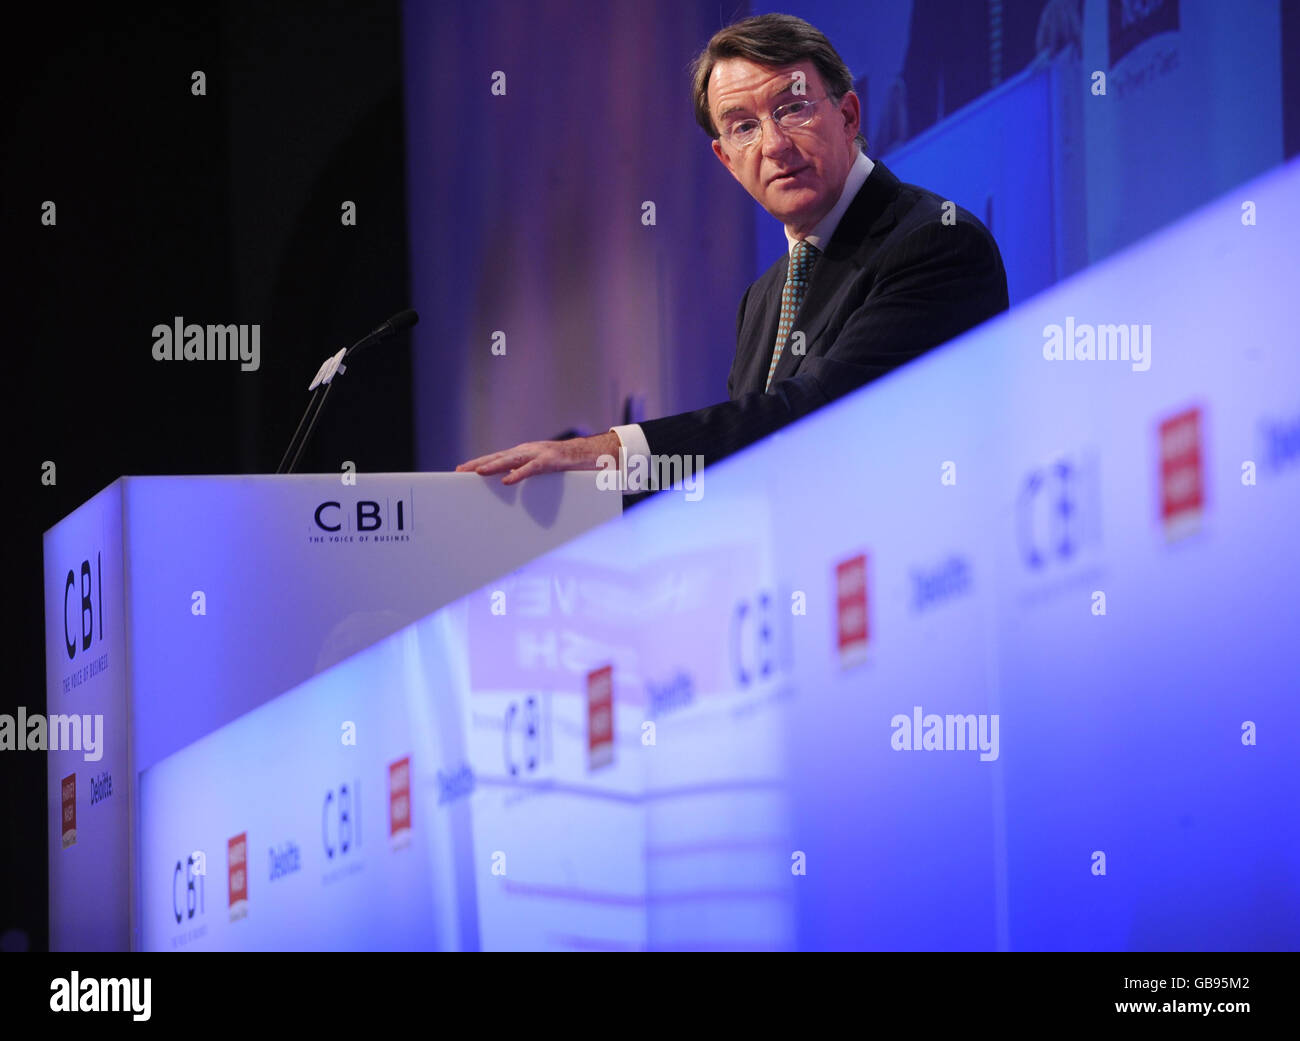 El Secretario de Negocios Lord Mandelson se dirige a la Conferencia CBI en Londres. Foto de stock